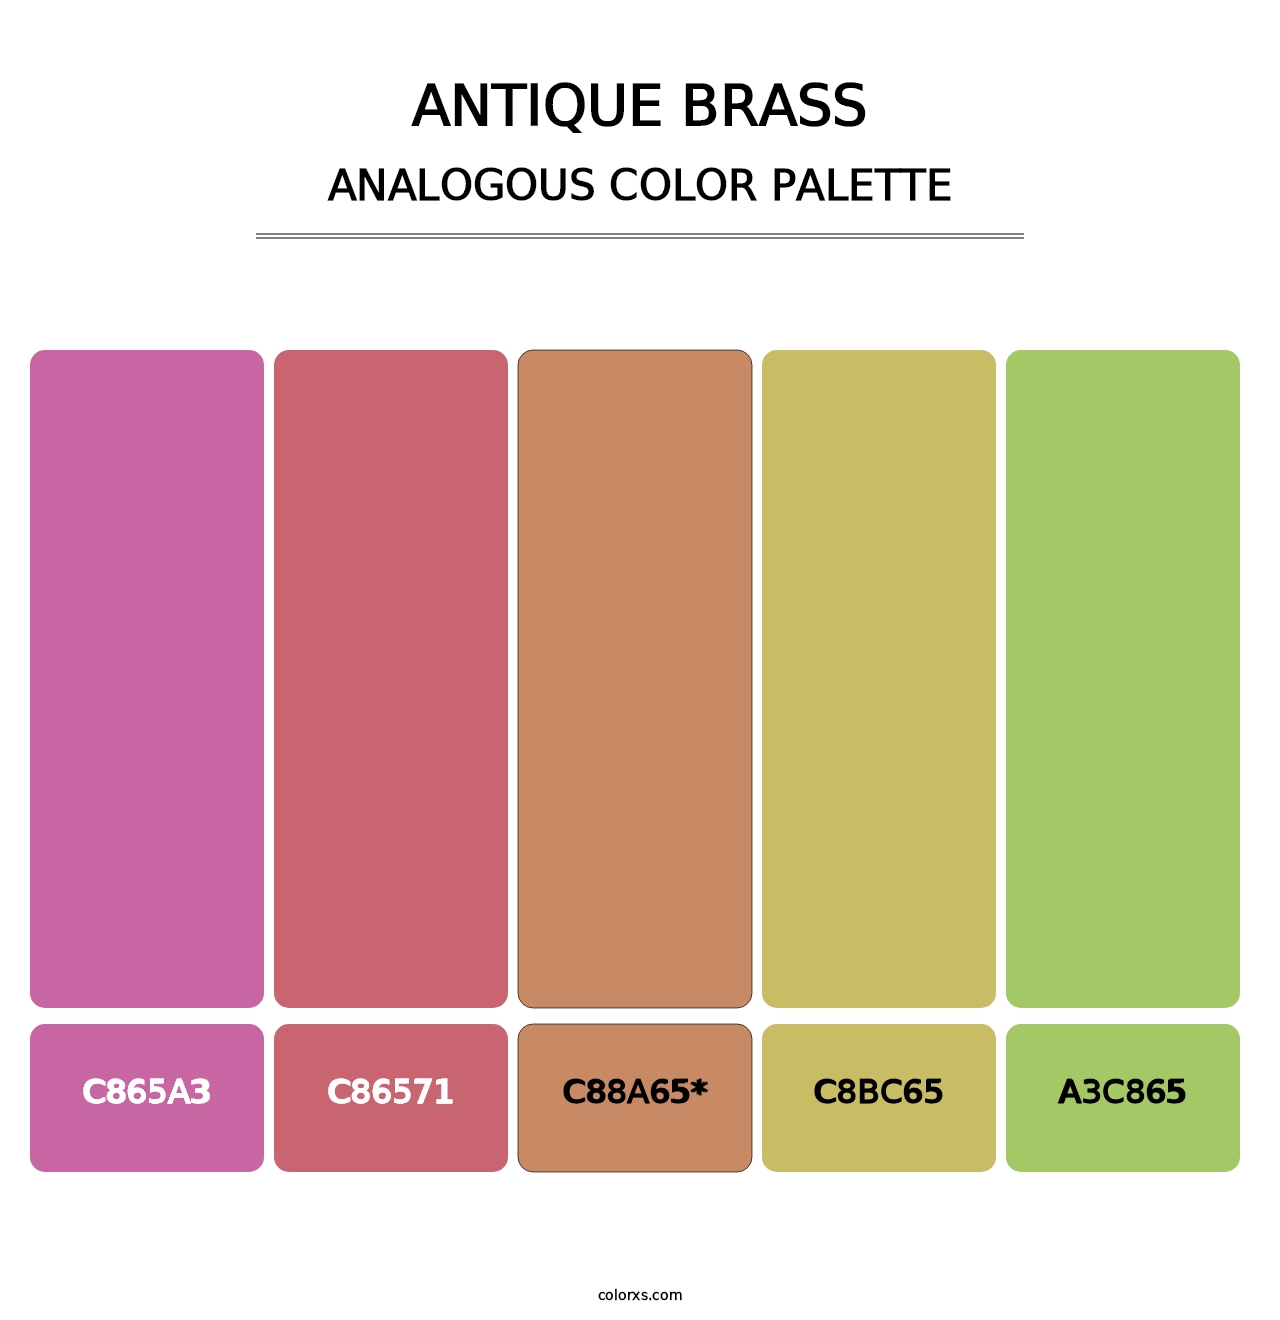 Antique Brass - Analogous Color Palette